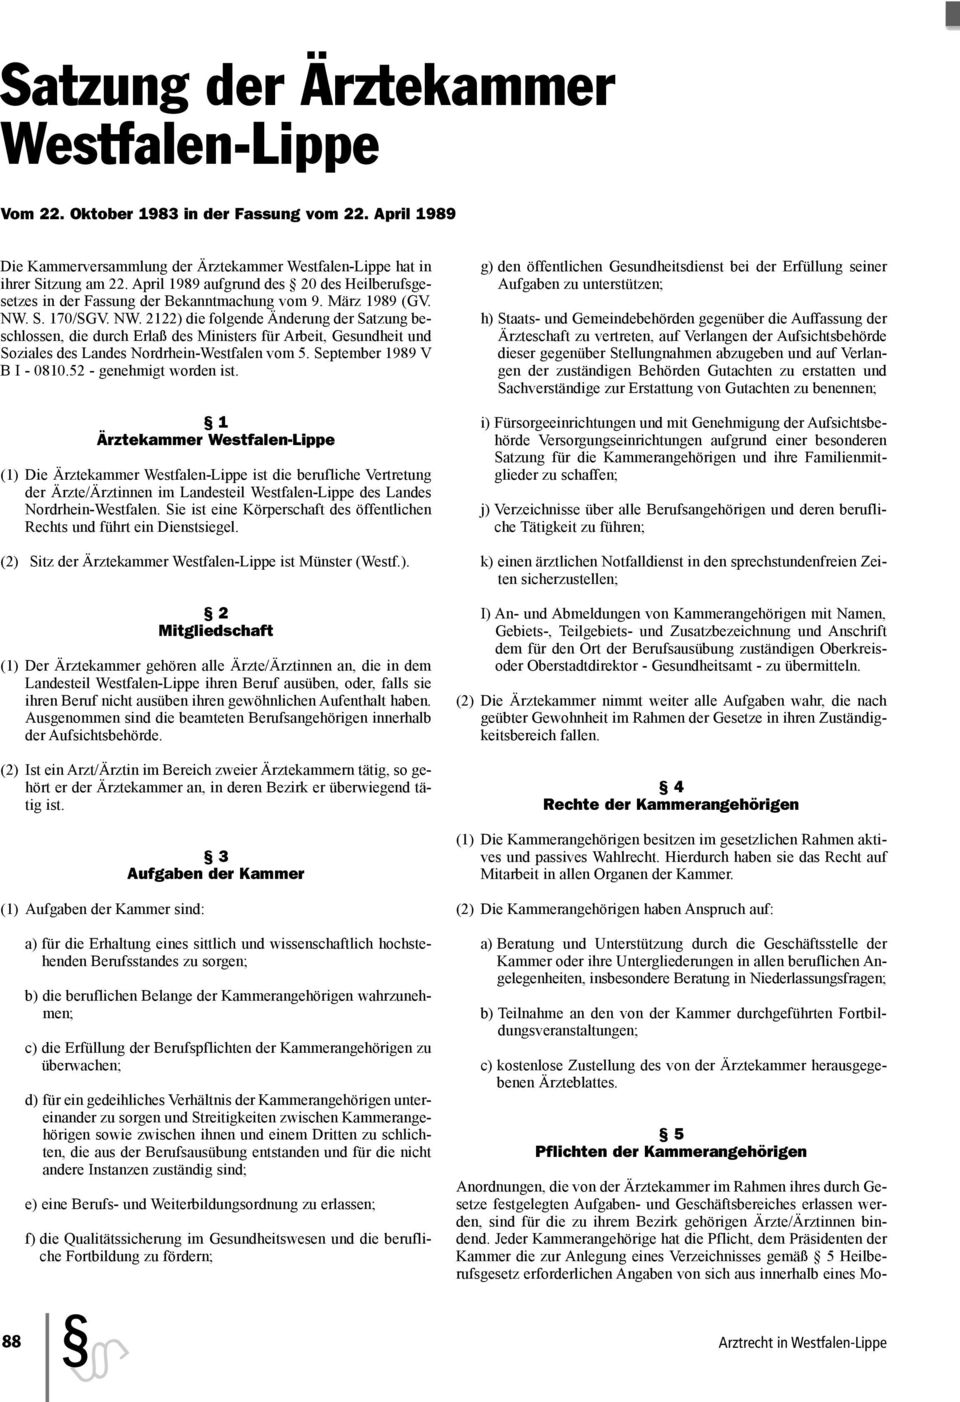 S. 170/SGV. NW. 2122) die folgende Änderung der Satzung beschlossen, die durch Erlaß des Ministers für Arbeit, Gesundheit und Soziales des Landes Nordrhein-Westfalen vom 5.